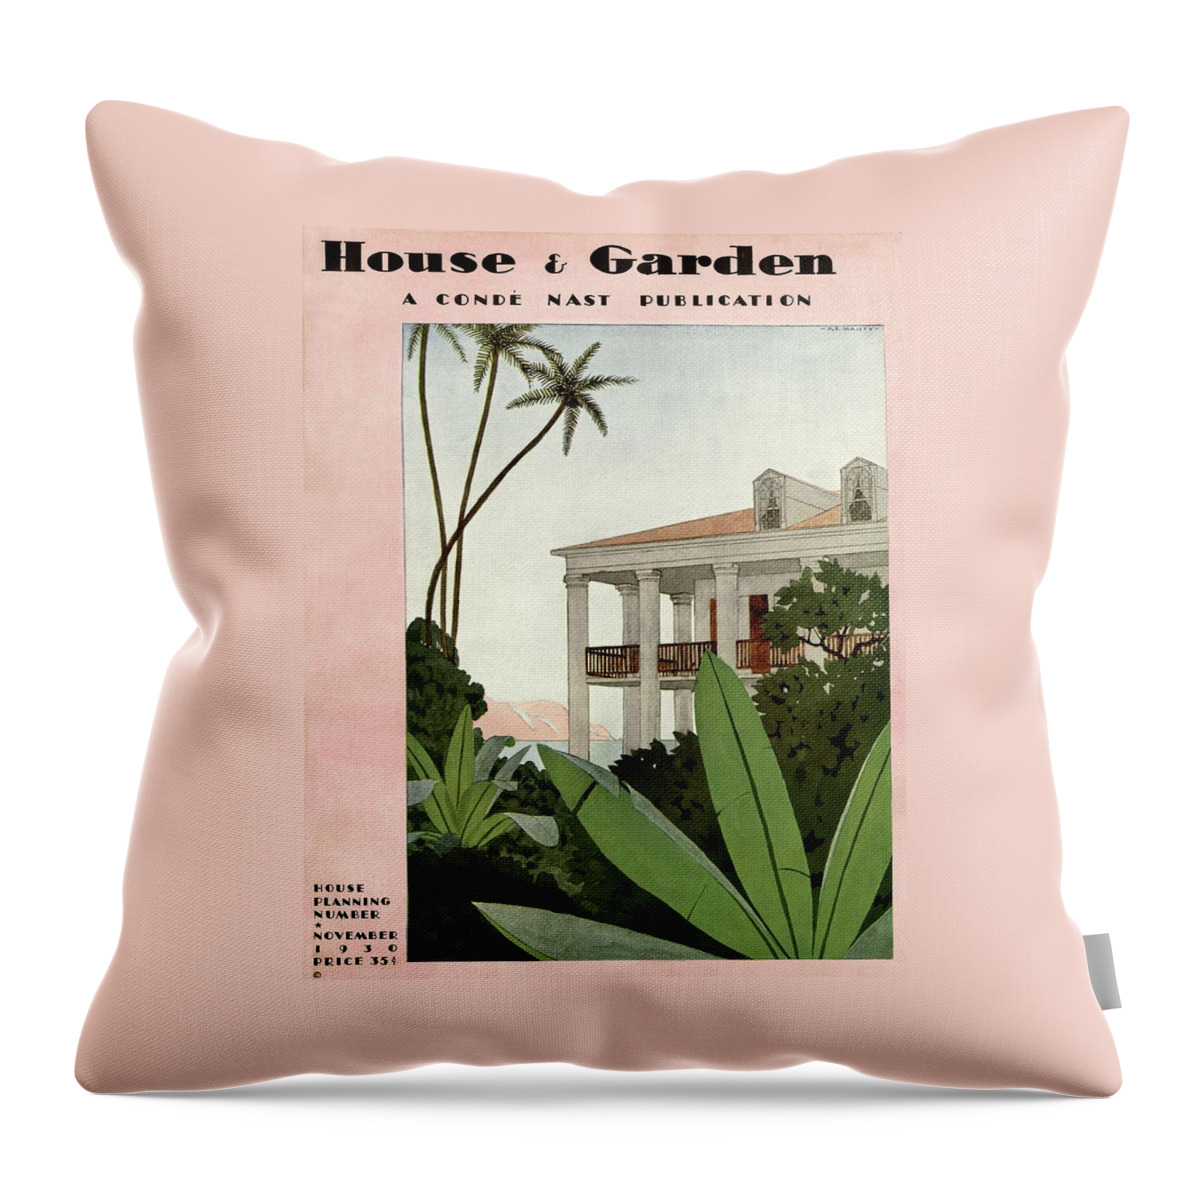 House & Garden Cover Illustration Throw Pillow